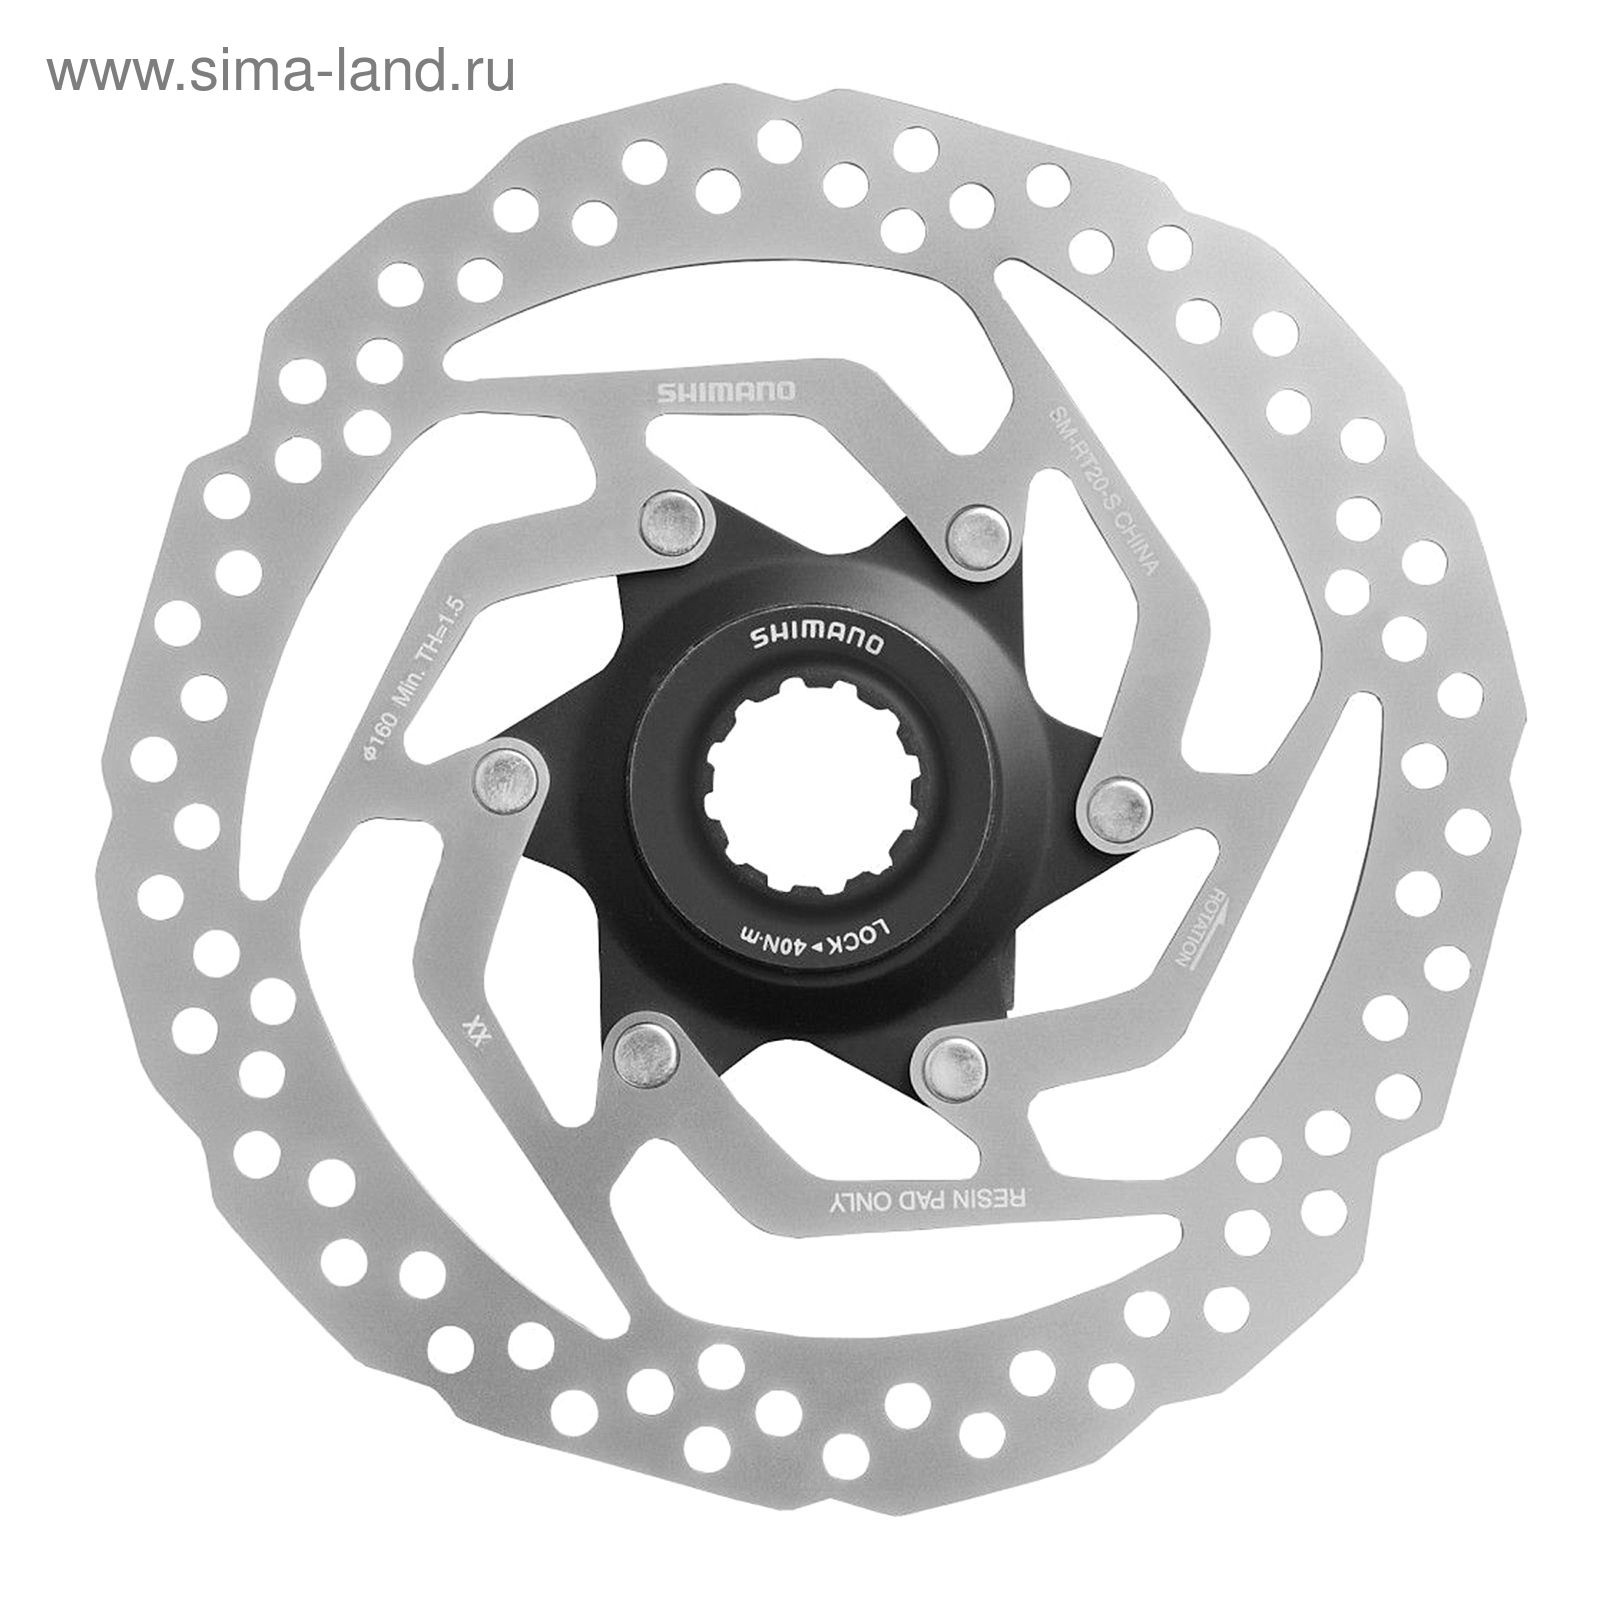 Тормозной диск Shimano RT20, 160 мм, C.Lock, только для пласт колод